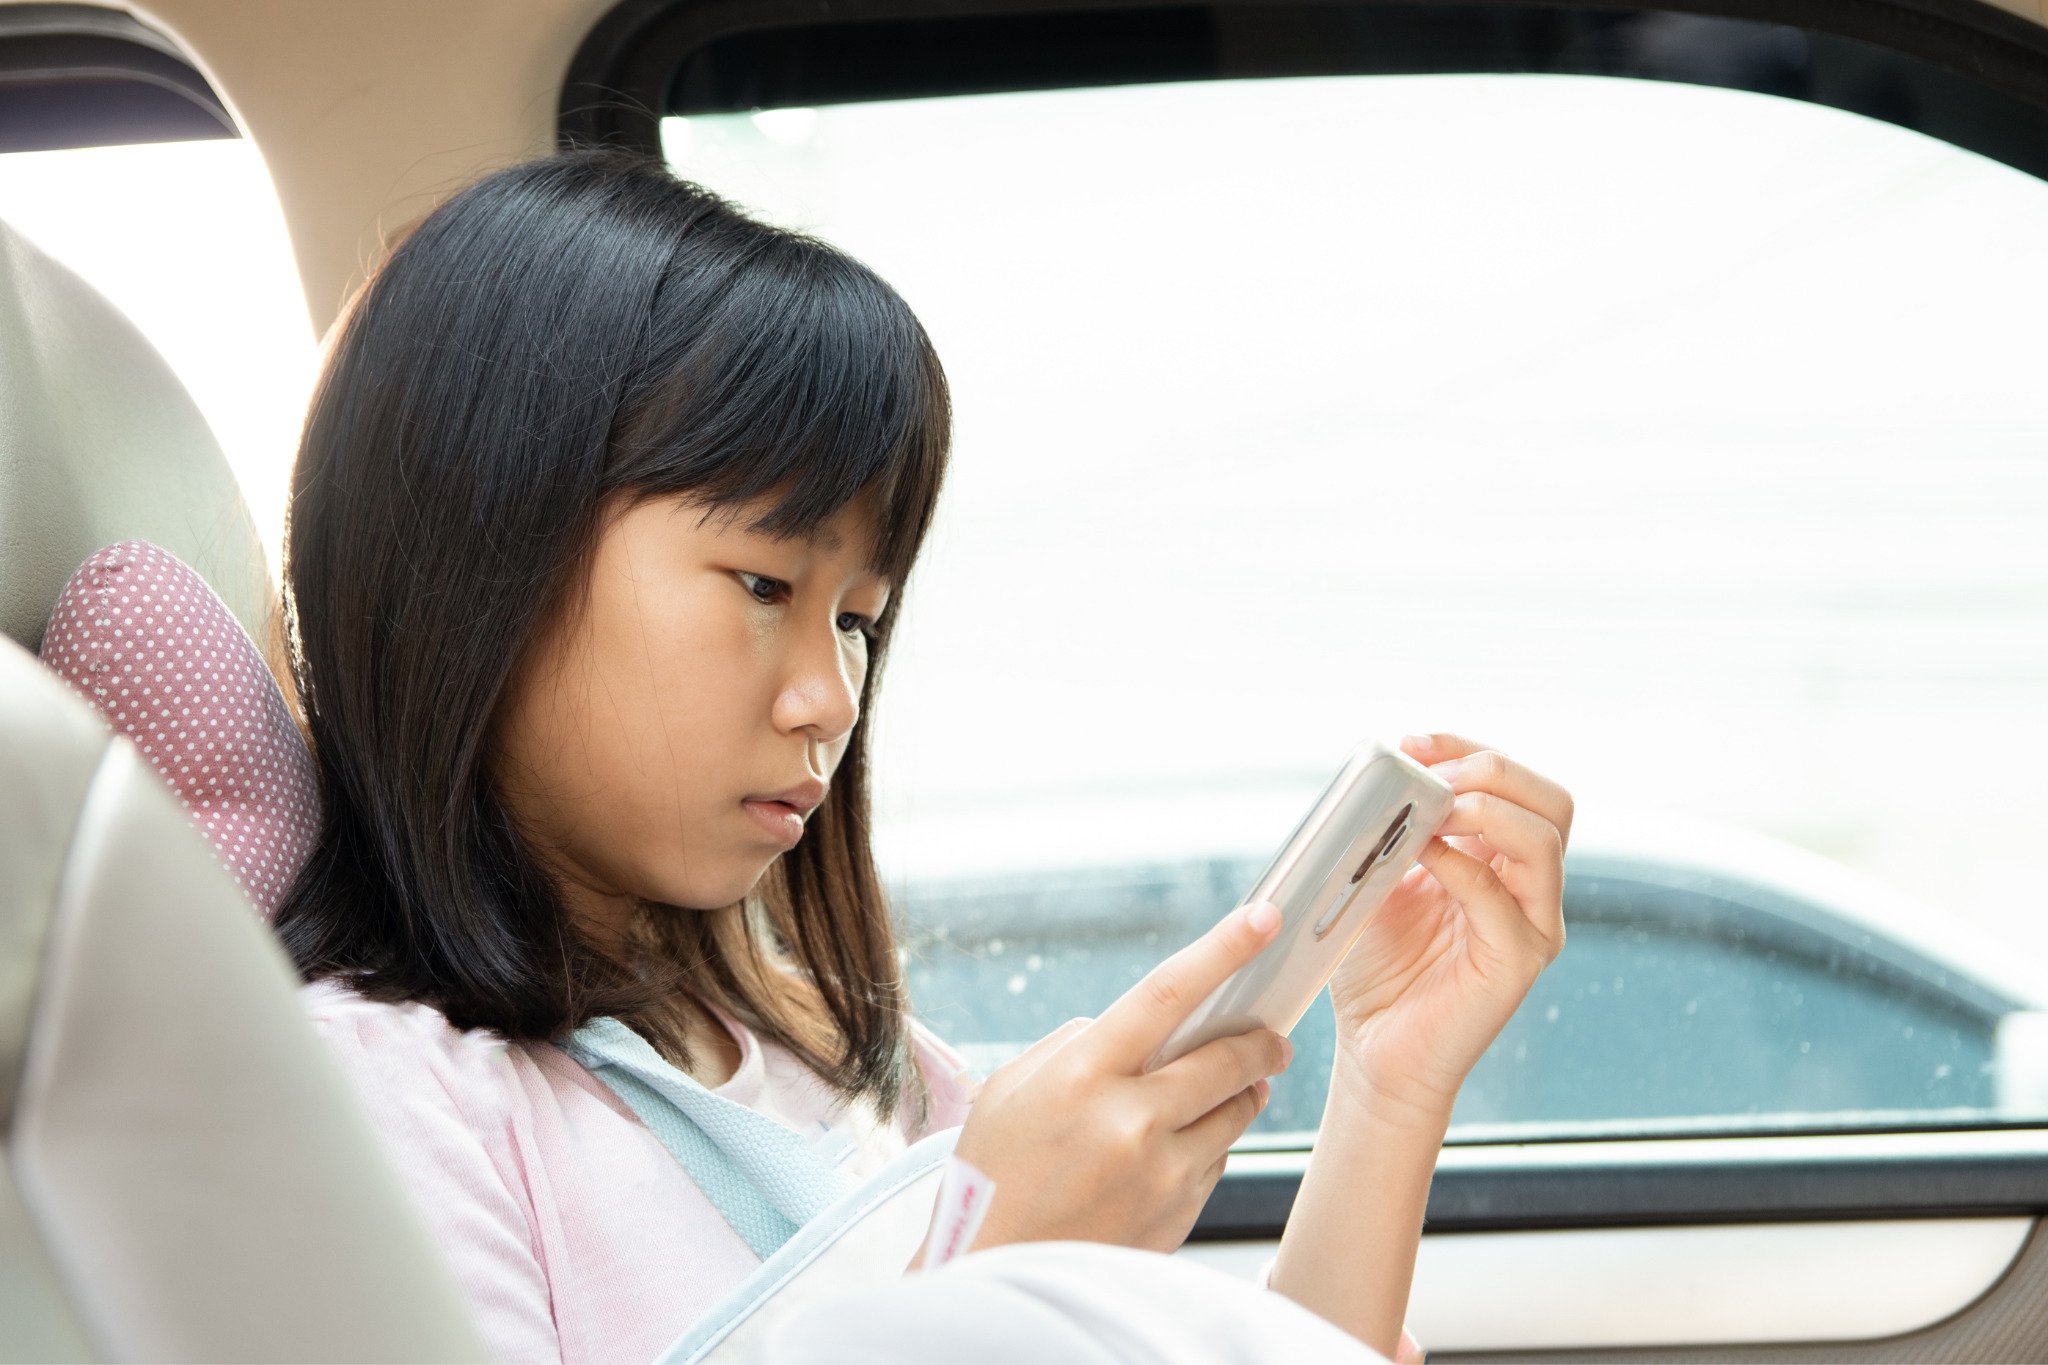  Việc trẻ em sử dụng điện thoại quá nhiều gây ra những hệ lụy về sức khỏe sau này (Ảnh minh hoạ)